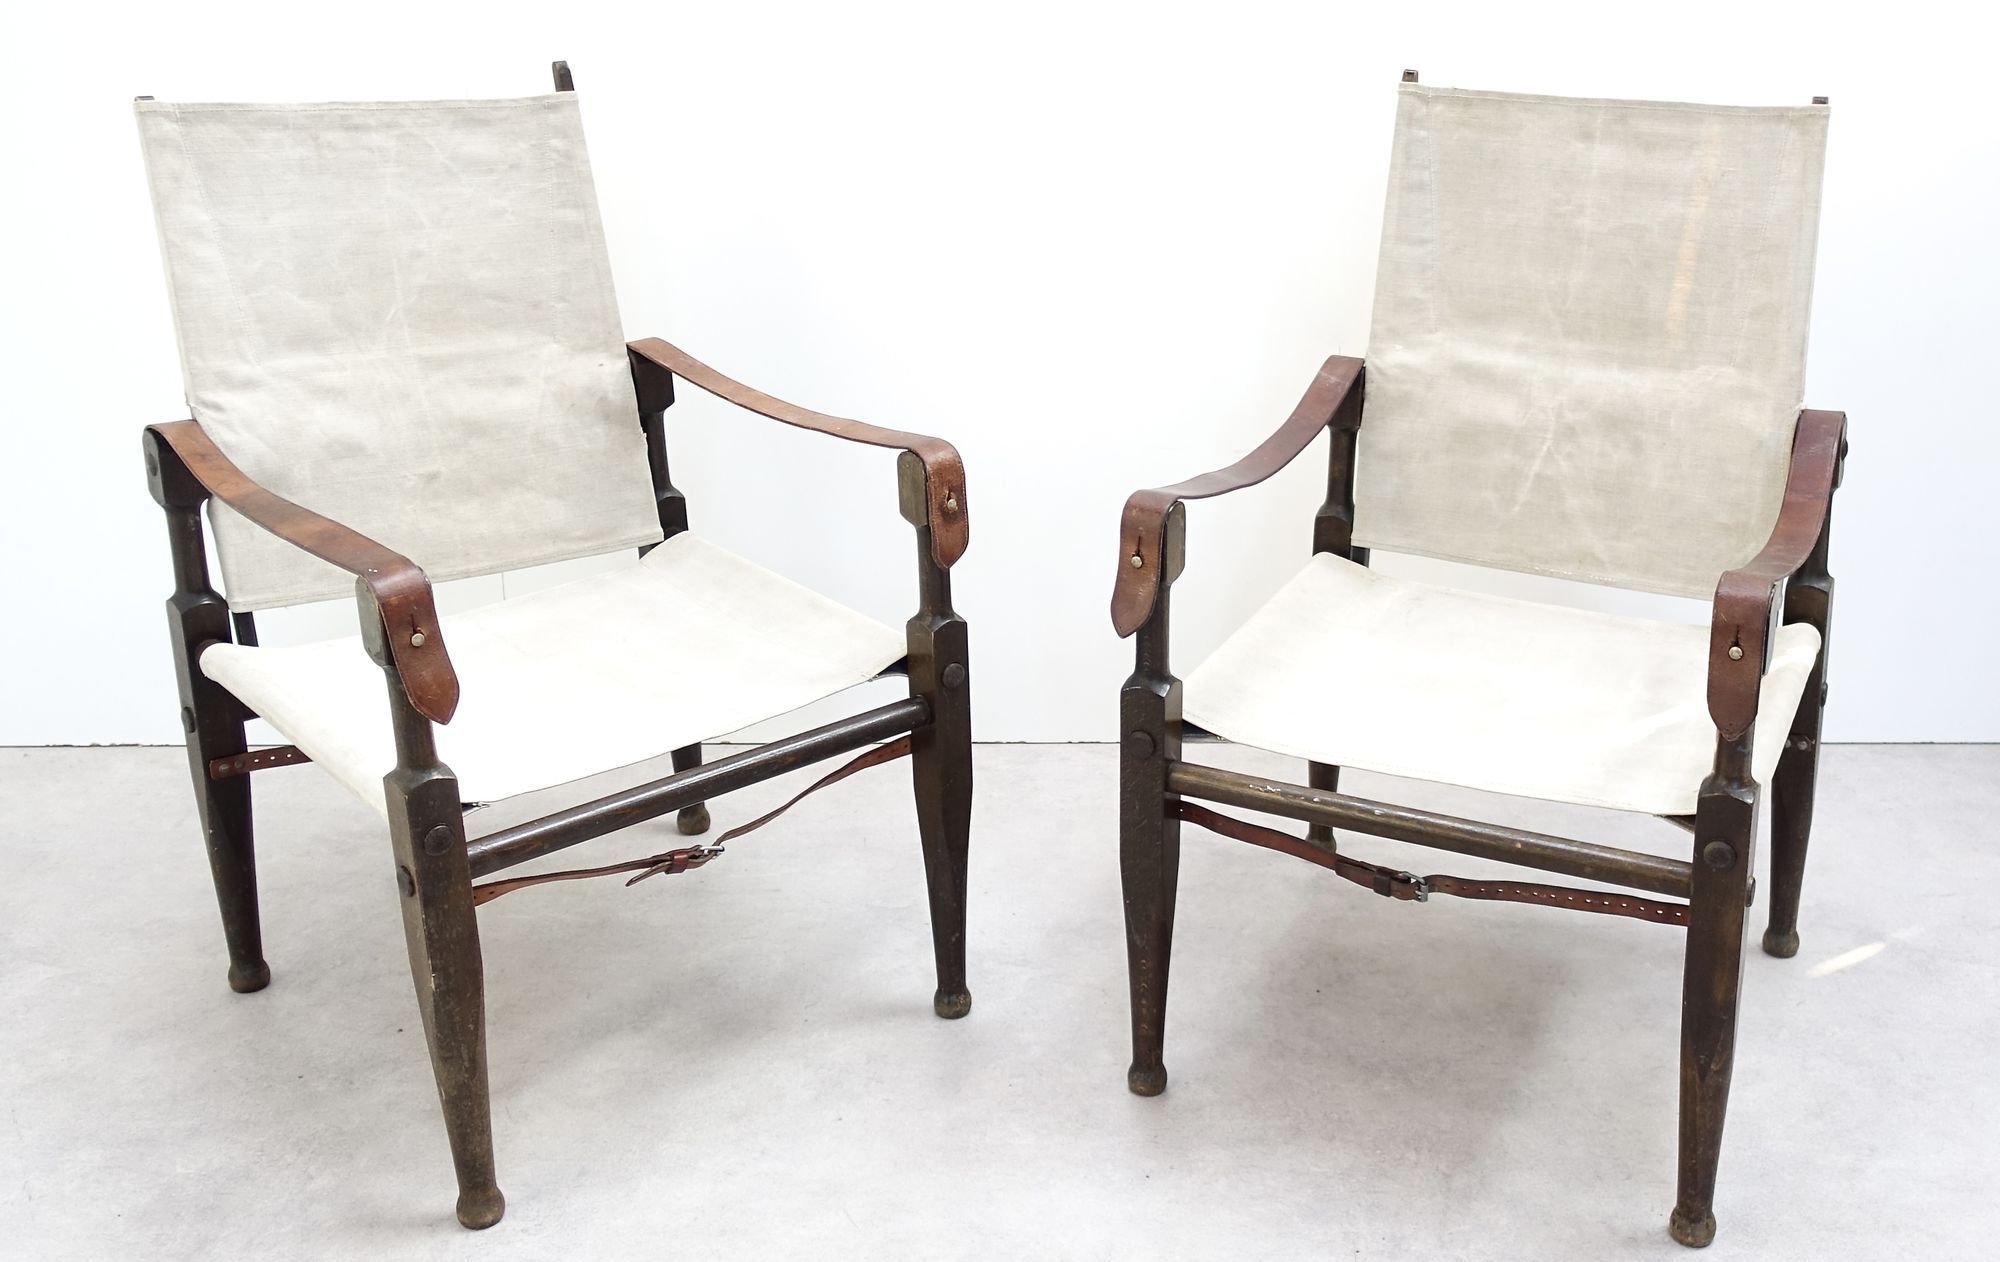 Colonial chairs designed by Swiss architect Wilhelm Kienzle